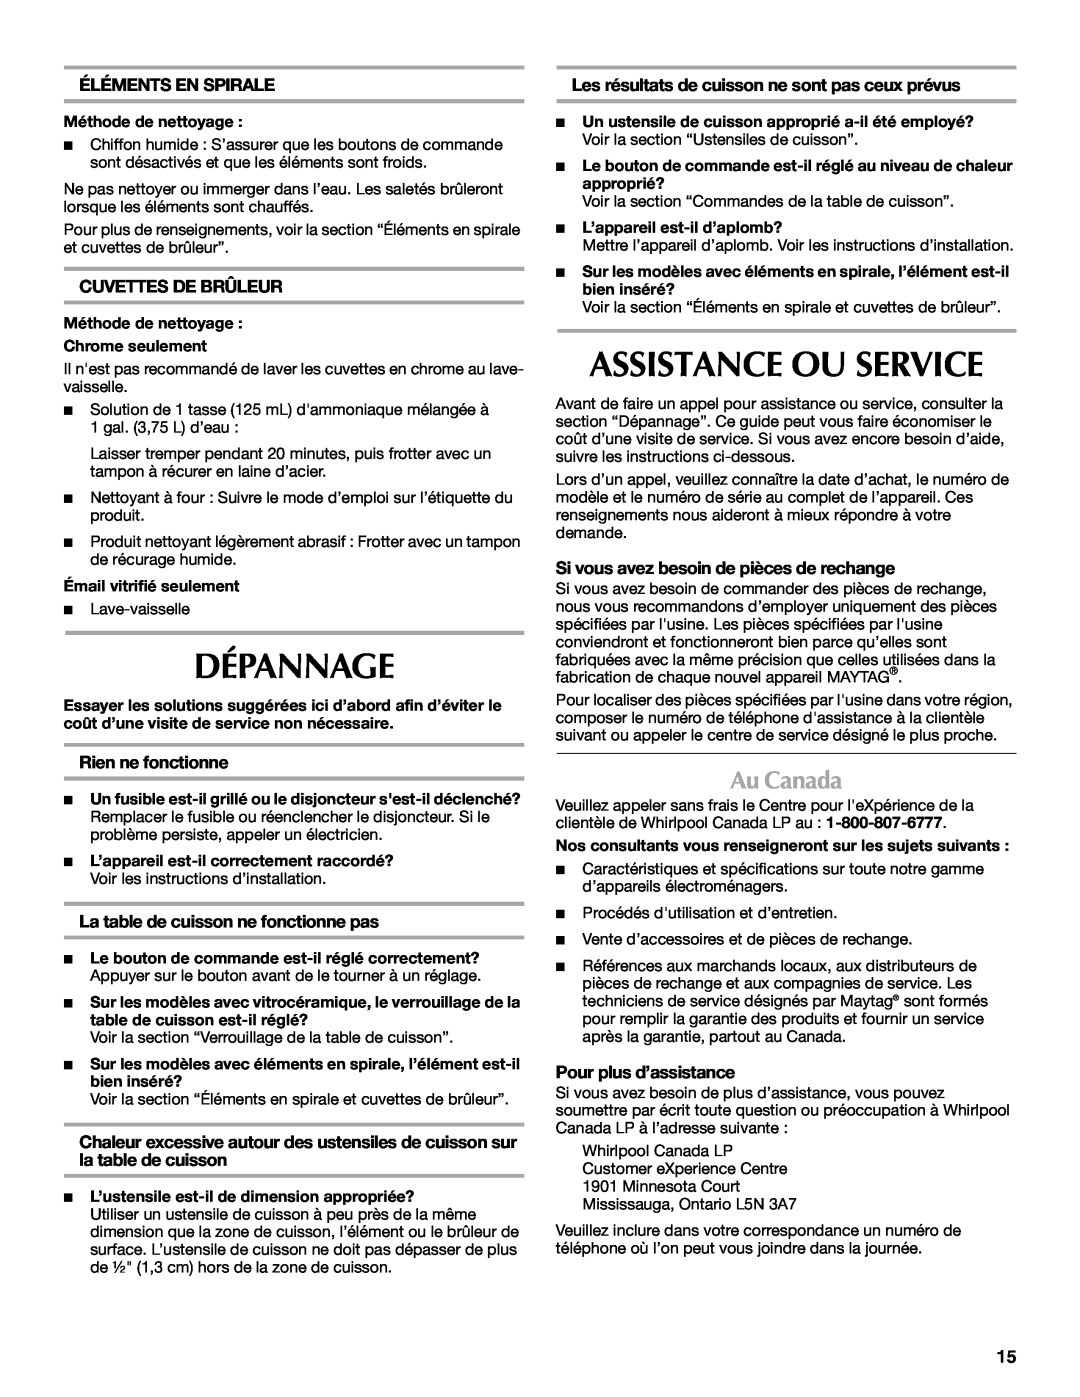 Maytag W10274251A manual Dépannage, Assistance Ou Service, Au Canada, Éléments En Spirale, Cuvettes De Brûleur 